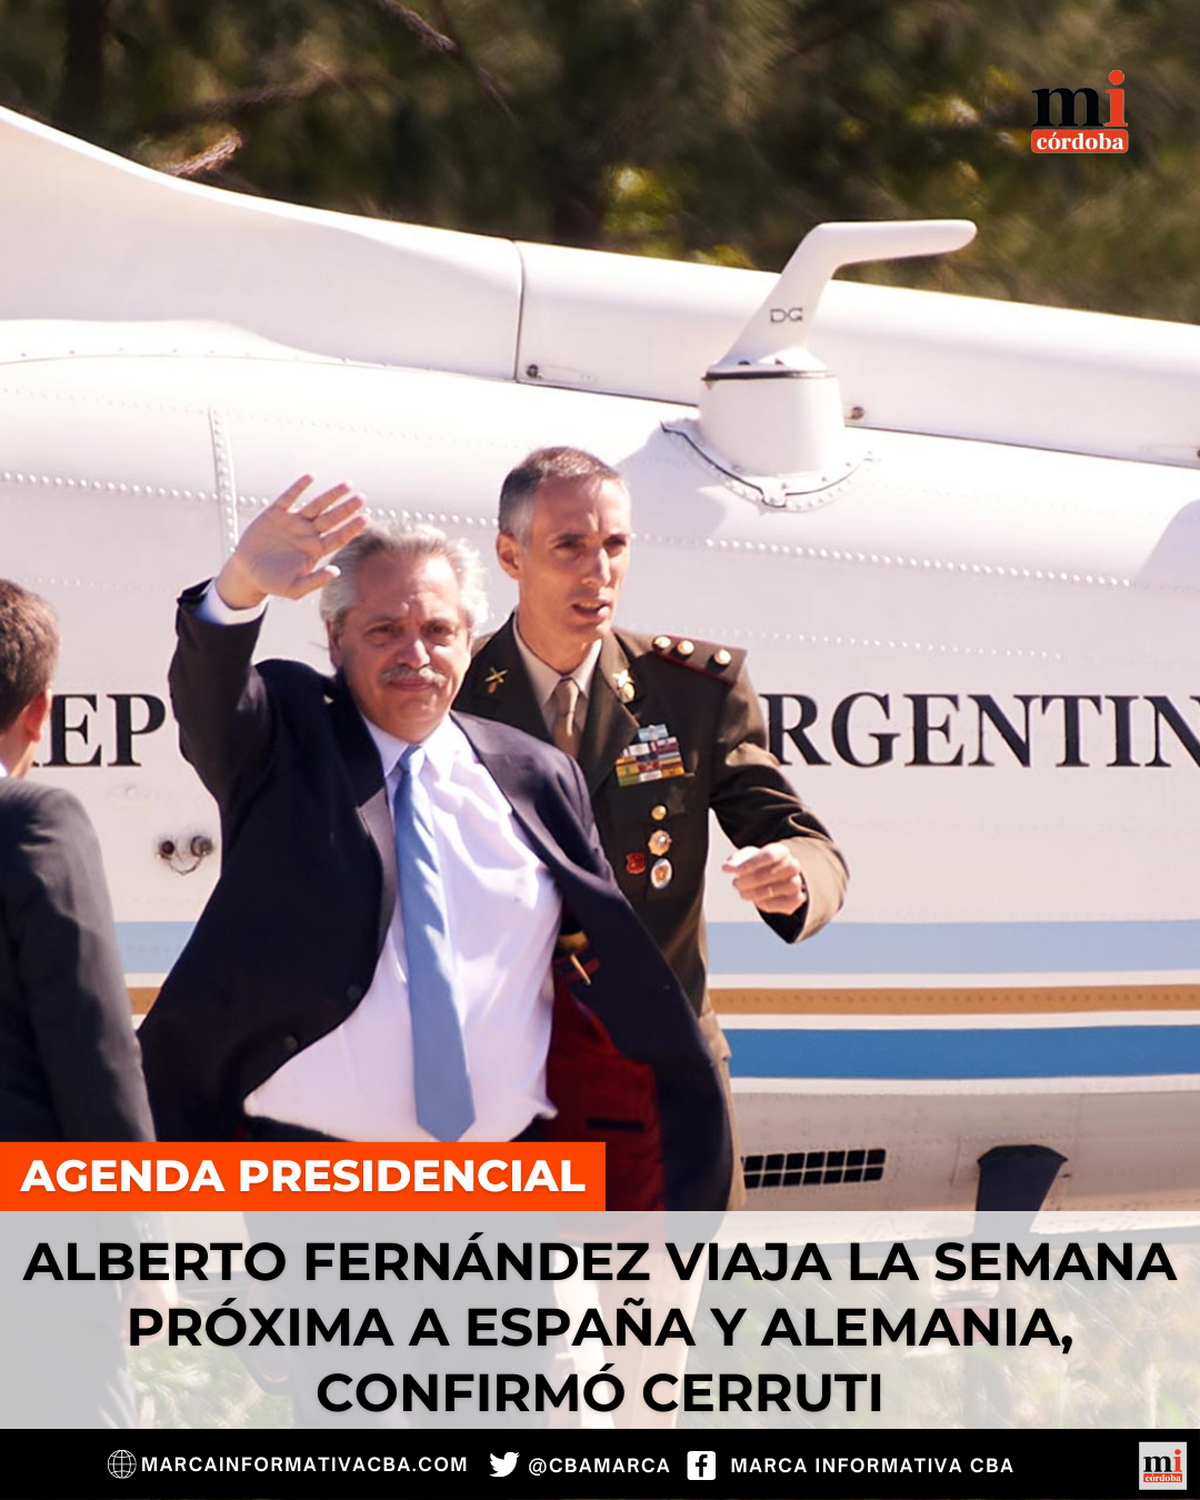 Alberto Fernández viaja la semana próxima a España y Alemania, confirmó Cerruti